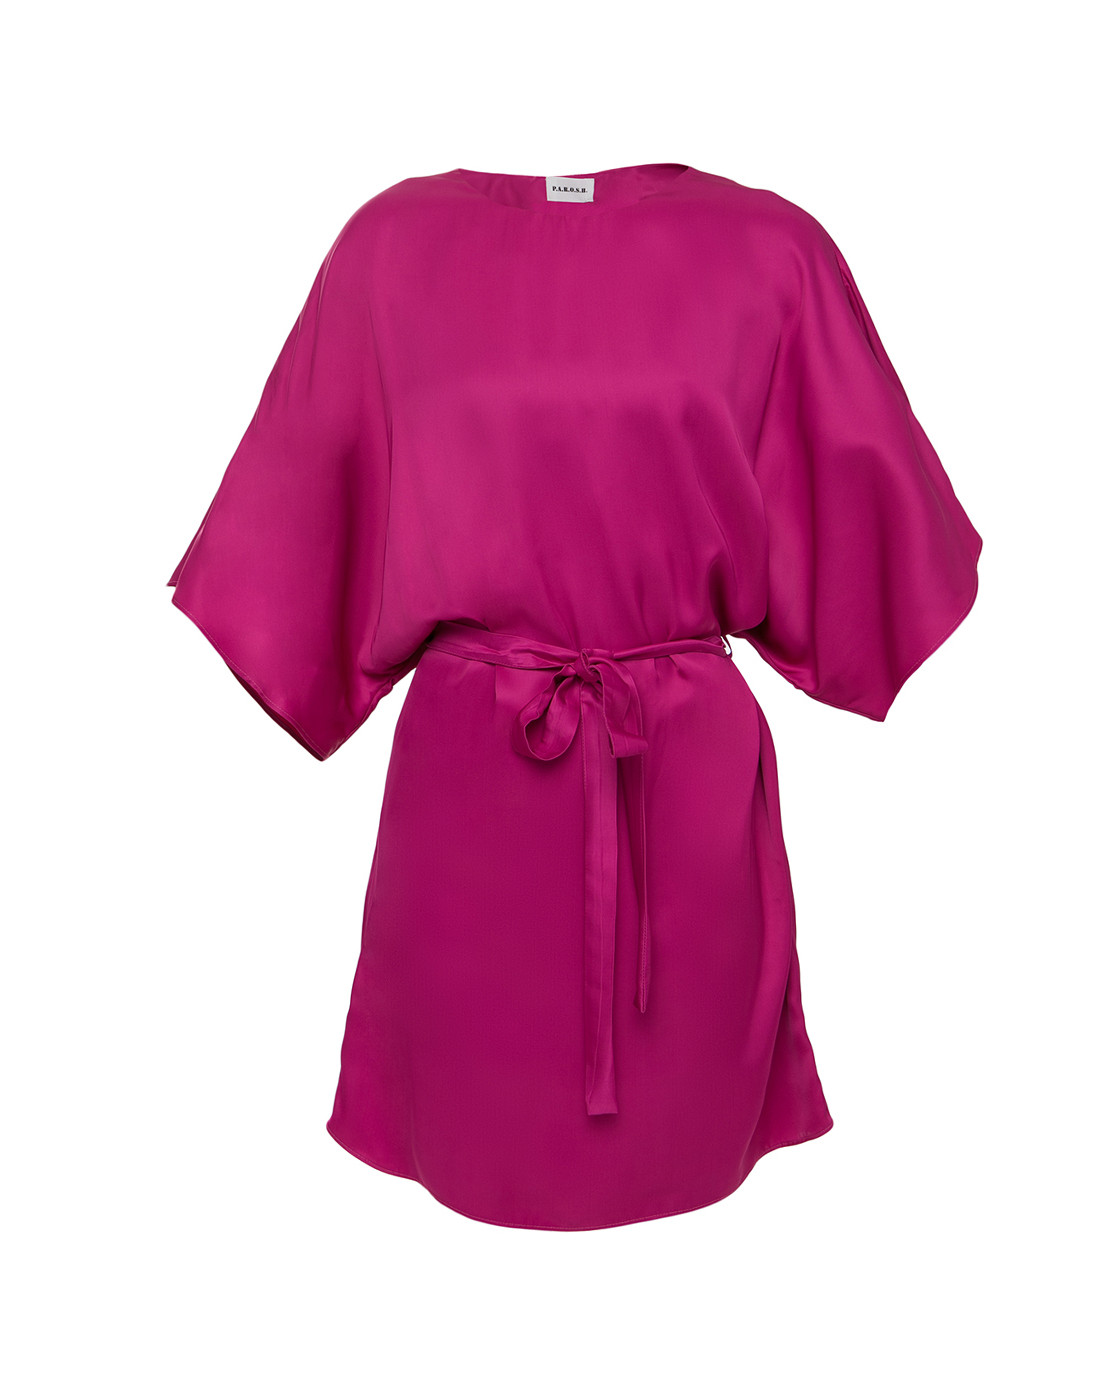 Платье розовое женское P.A.R.O.S.H. SROMEA/D725150/028-1